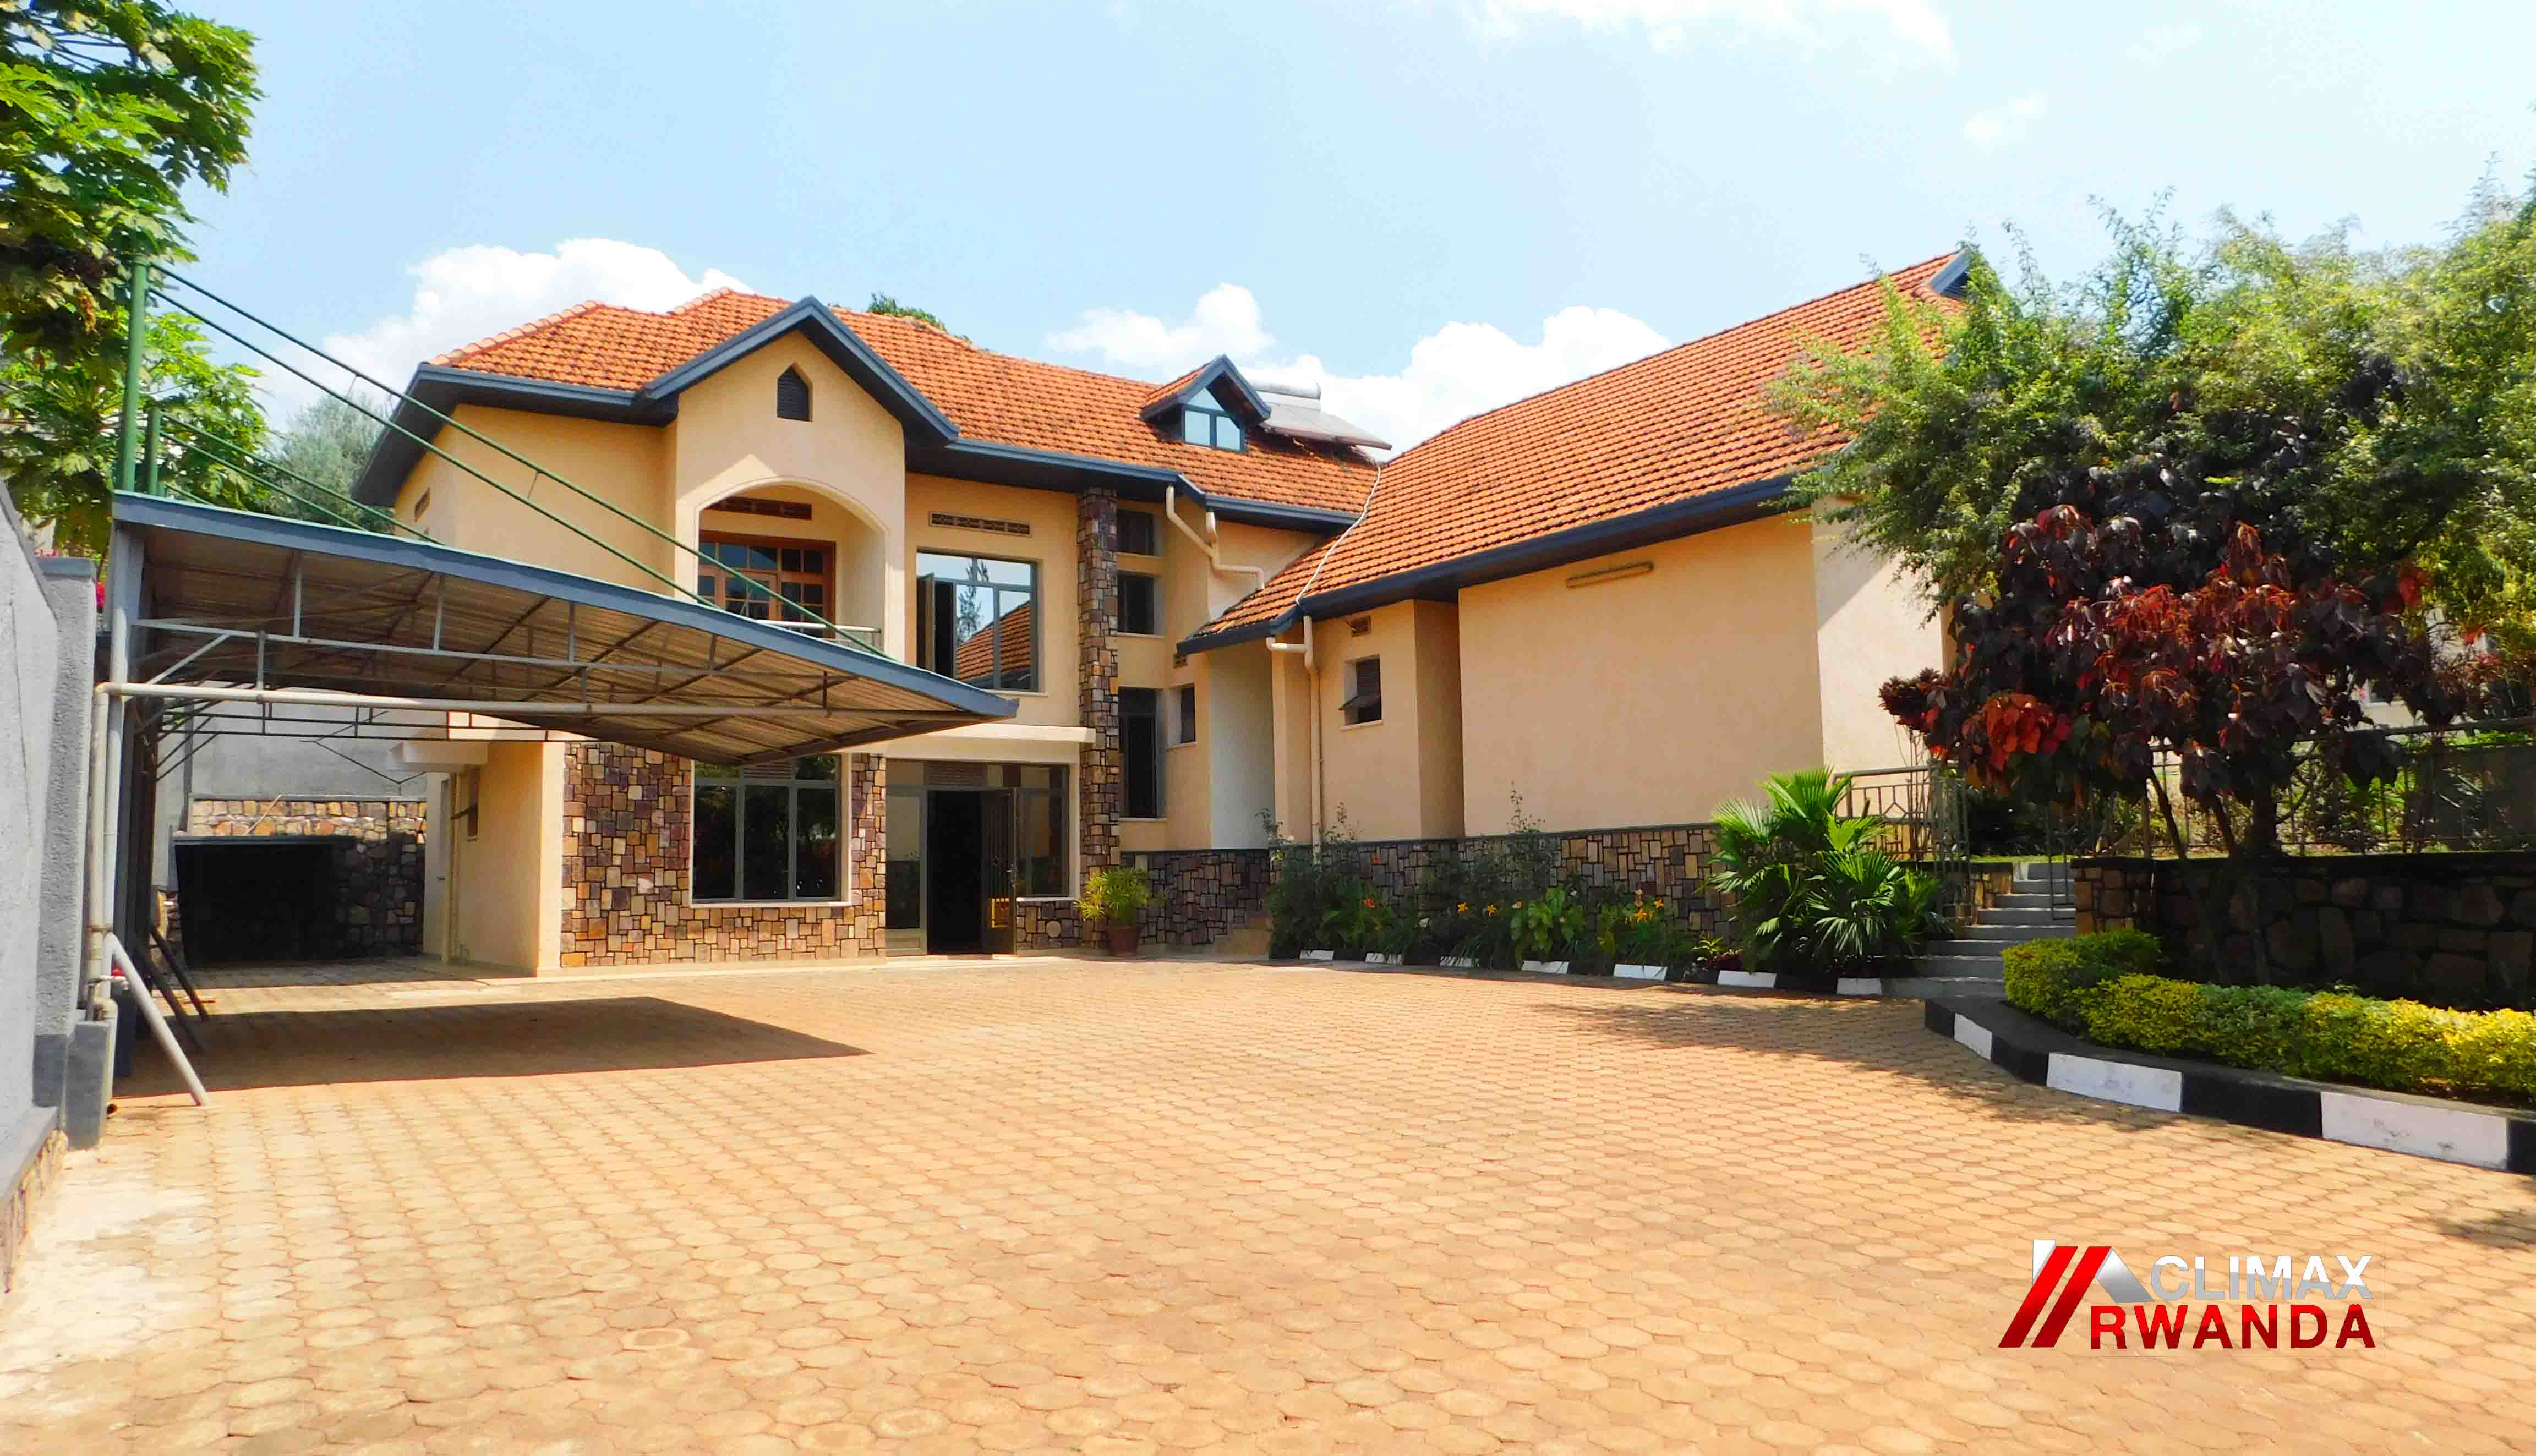 Unfurnished house in Kagugu Rwanda, for rent